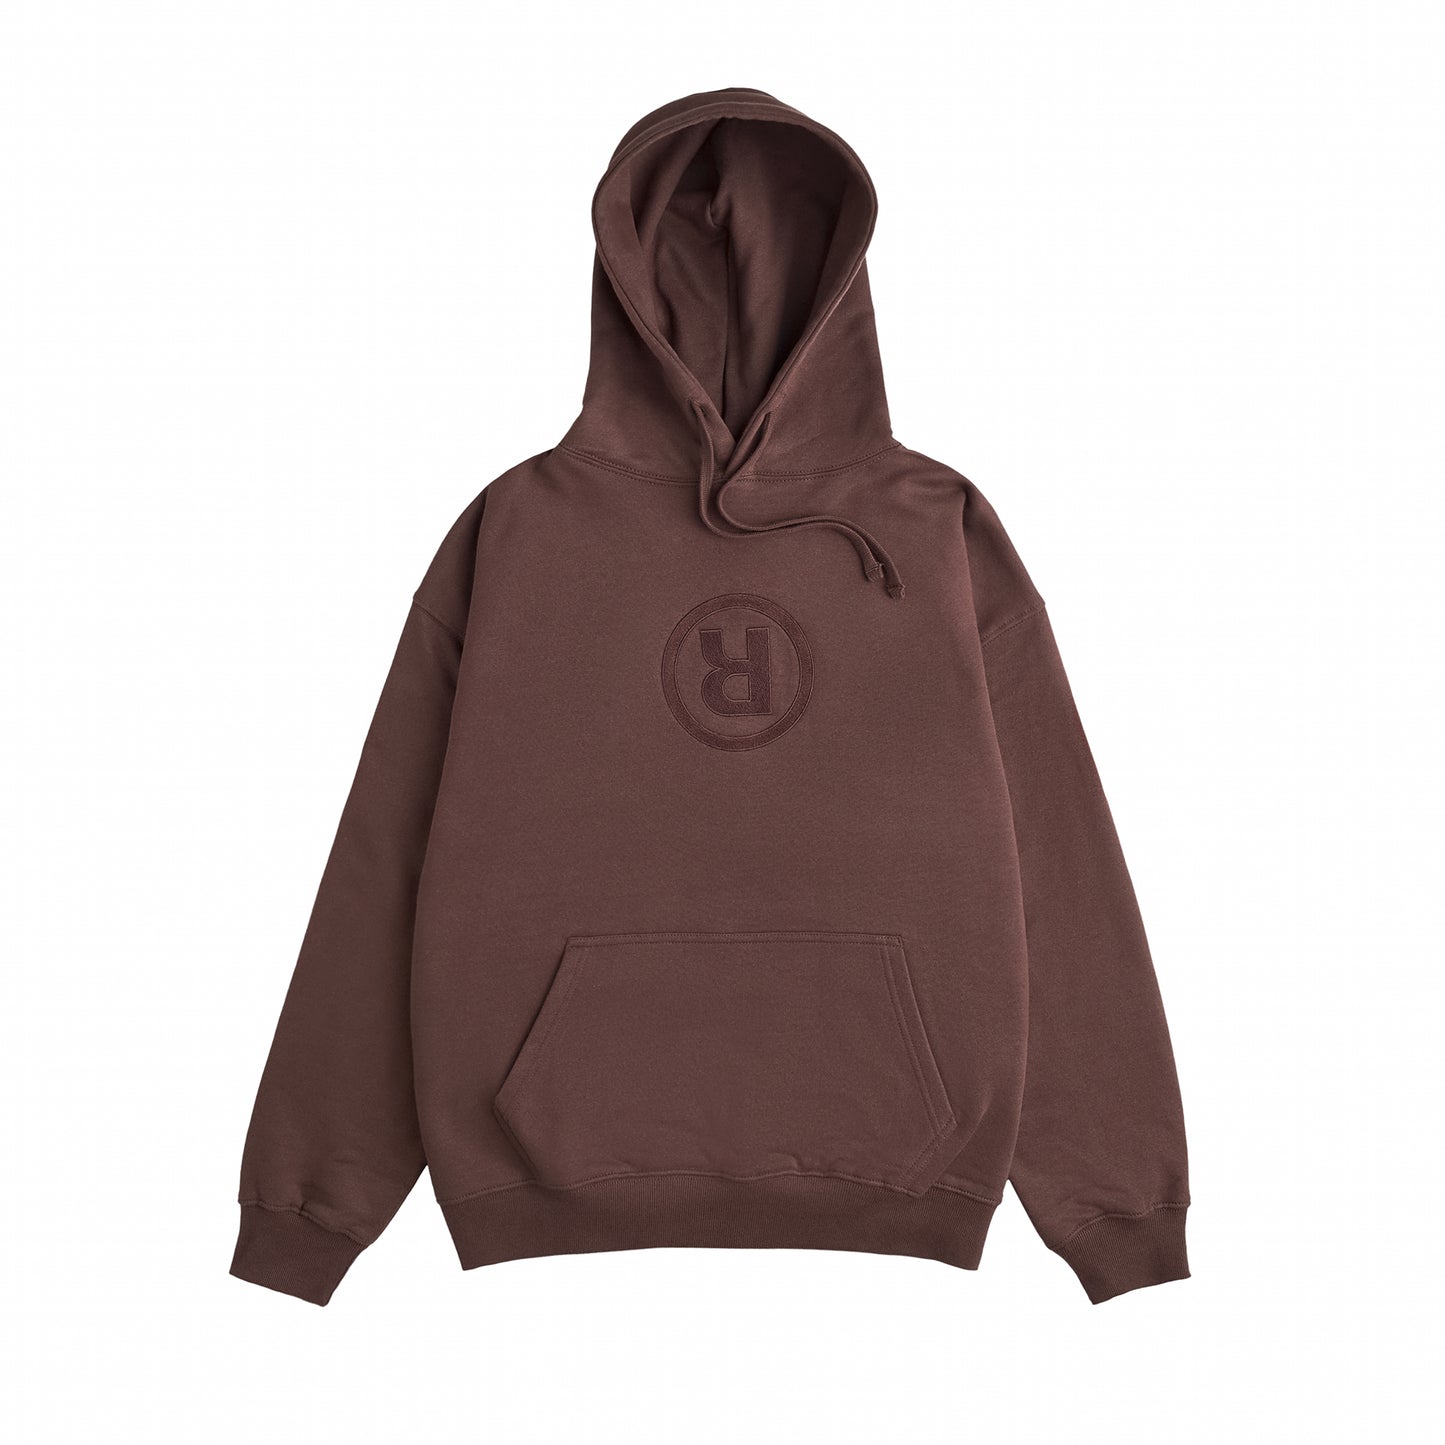 ® LOGO hoodie dark brown